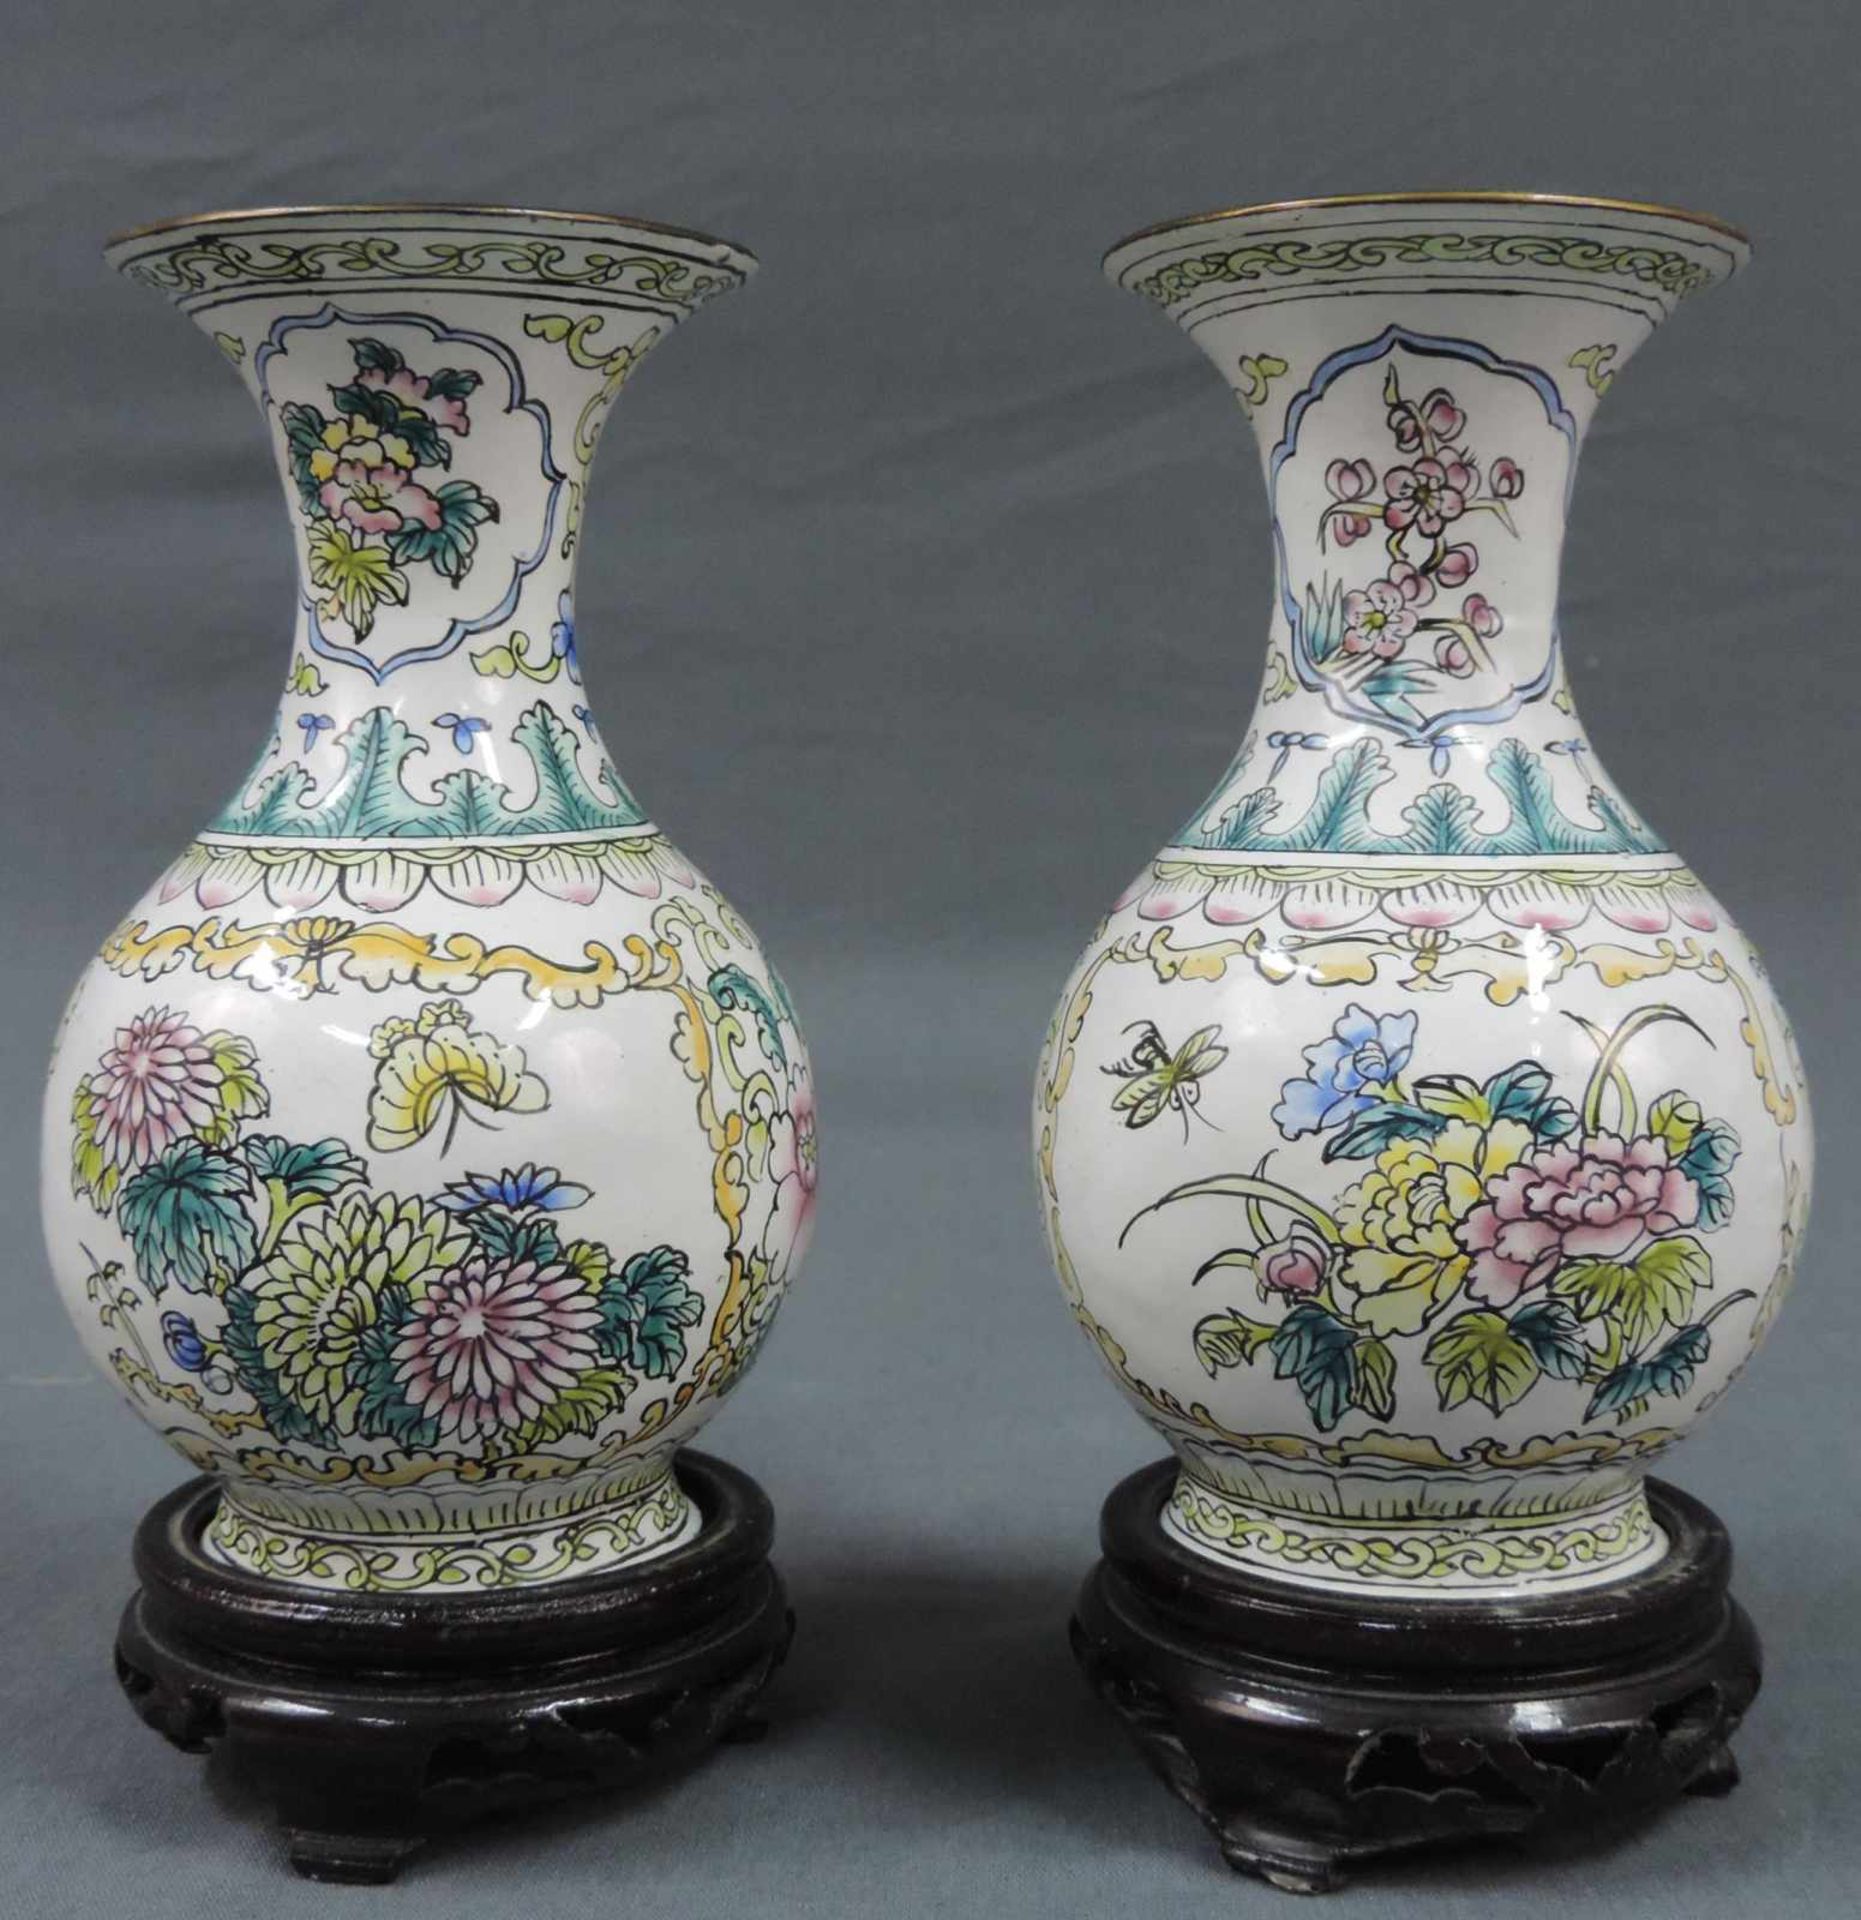 2 Cloisonne - Vasen mit Holzsockeln. Die Vasen sind 15 cm hoch ohne Sockel. 2 Cloisonne - vases with